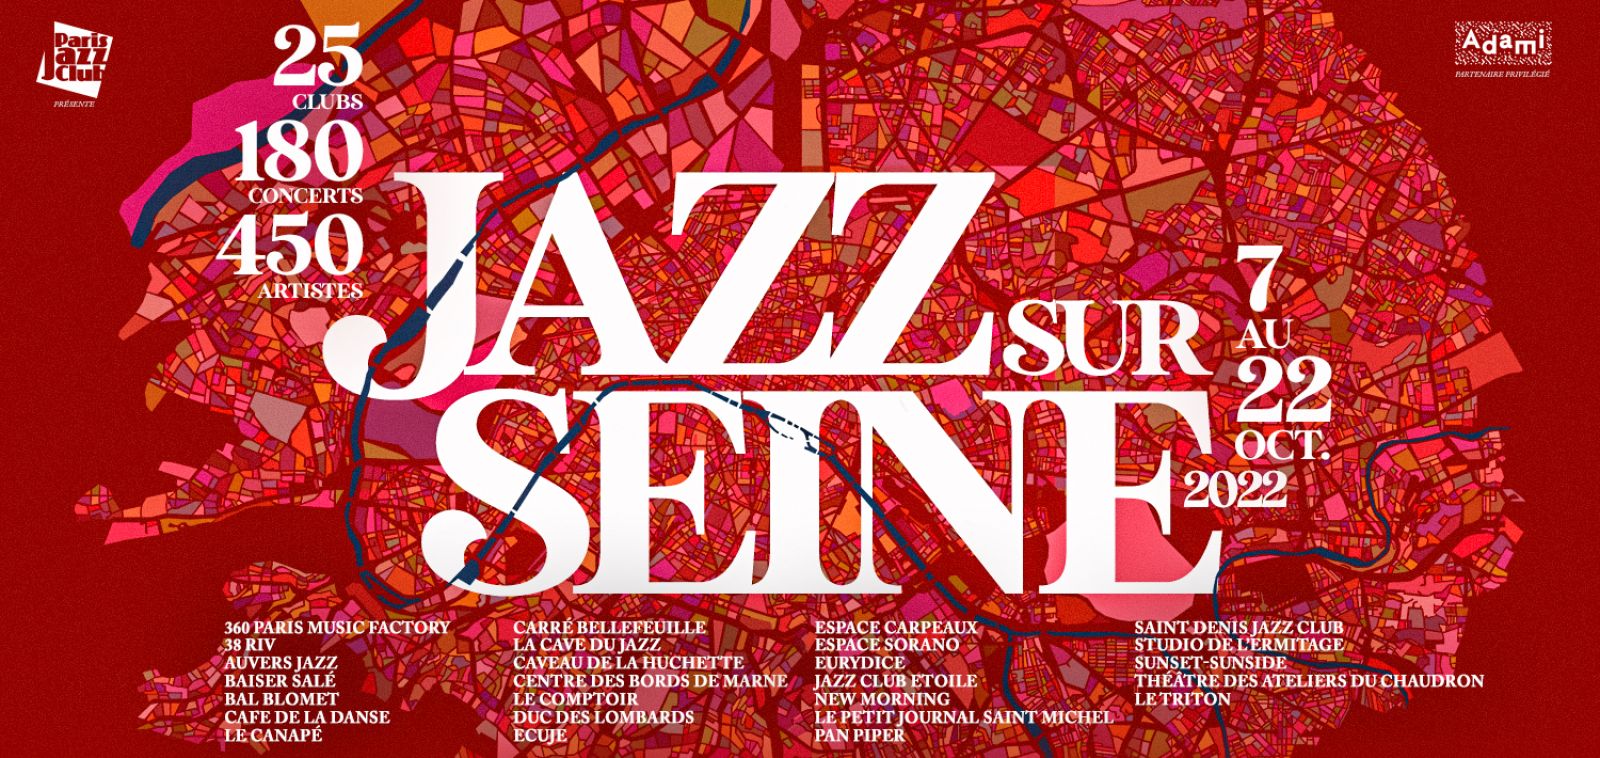 JAZZ SUR SEINE 2022 - Les clubs de jazz de Paris et d'Ile-de-France font leur festival